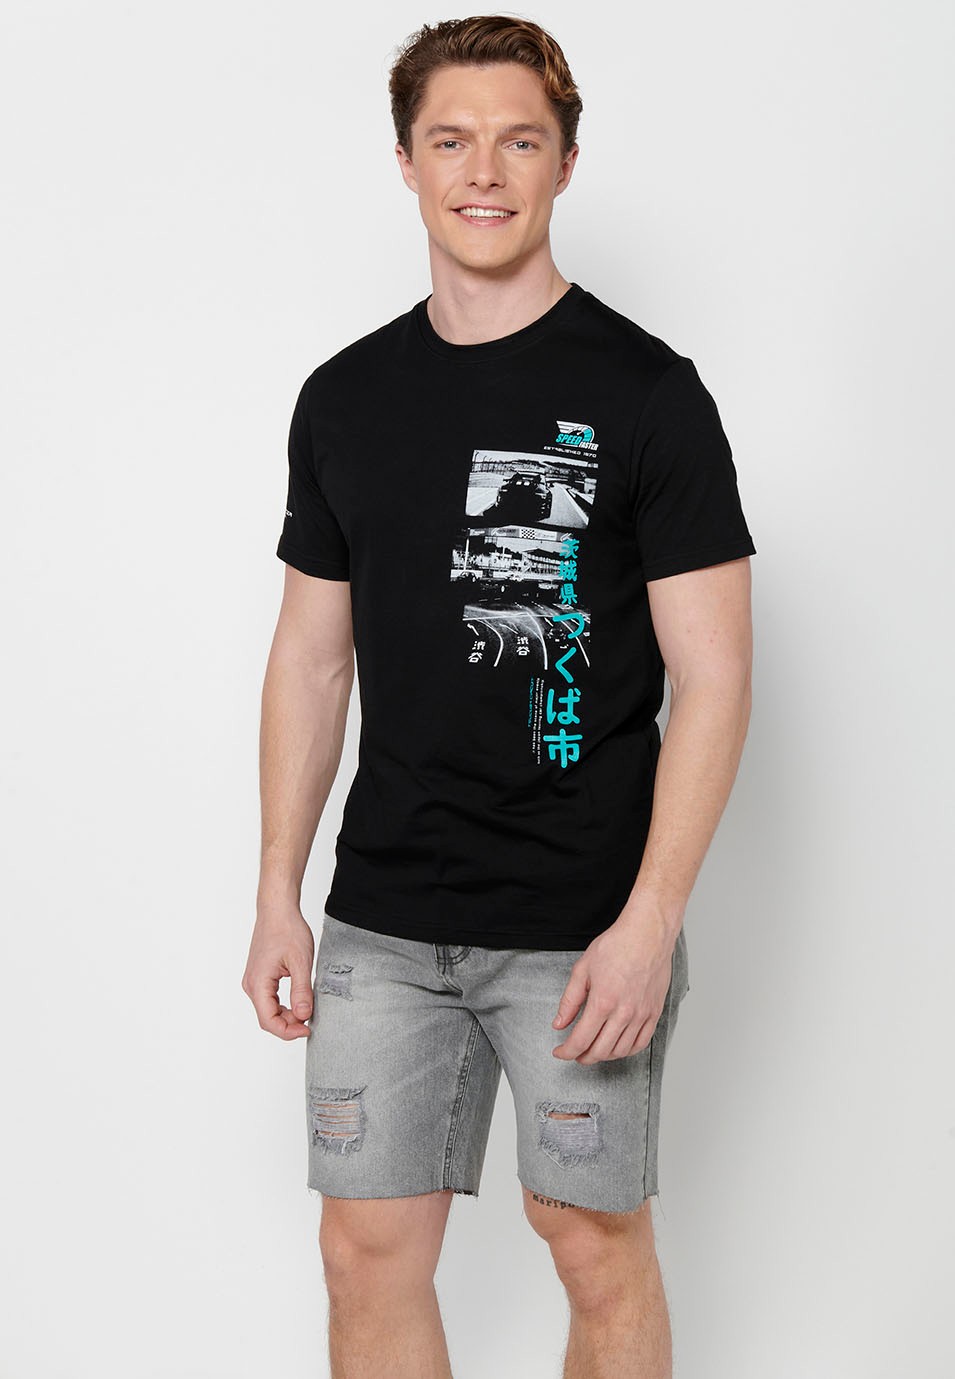 T-shirt manches courtes en coton, imprimé poitrine multicolore, coloris noir pour homme